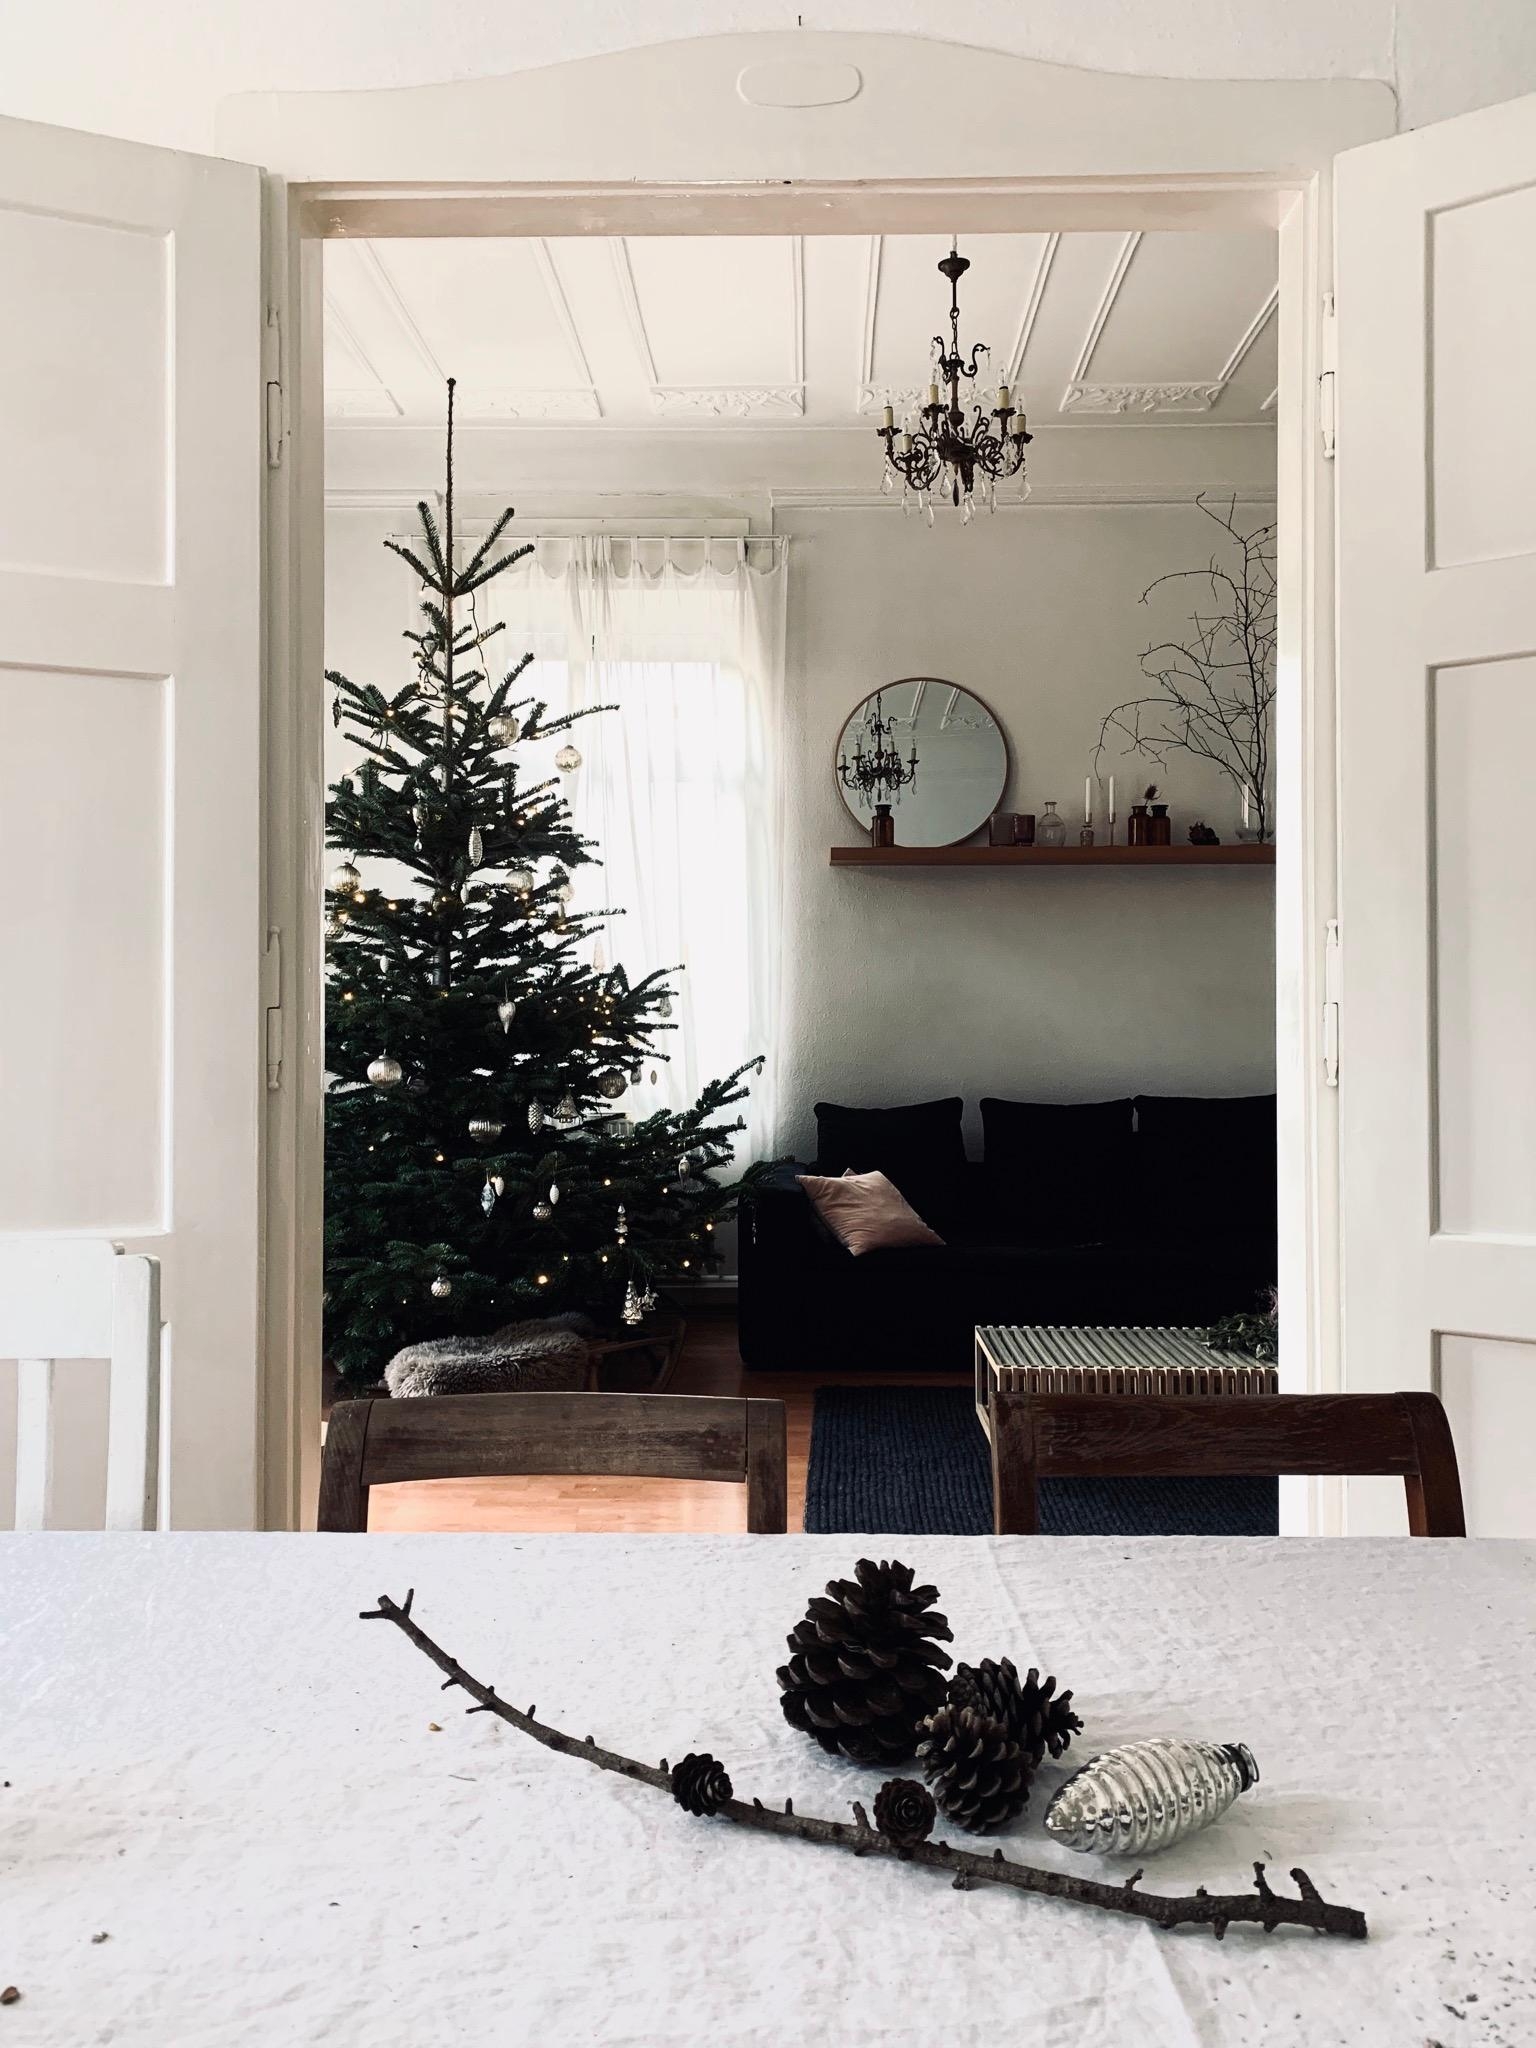 Letzte Grüße vom #weihnachtsbaum. #tannenbaum #couchliebt #wohnzimmer #altbau #weihnachten #dekoidee 